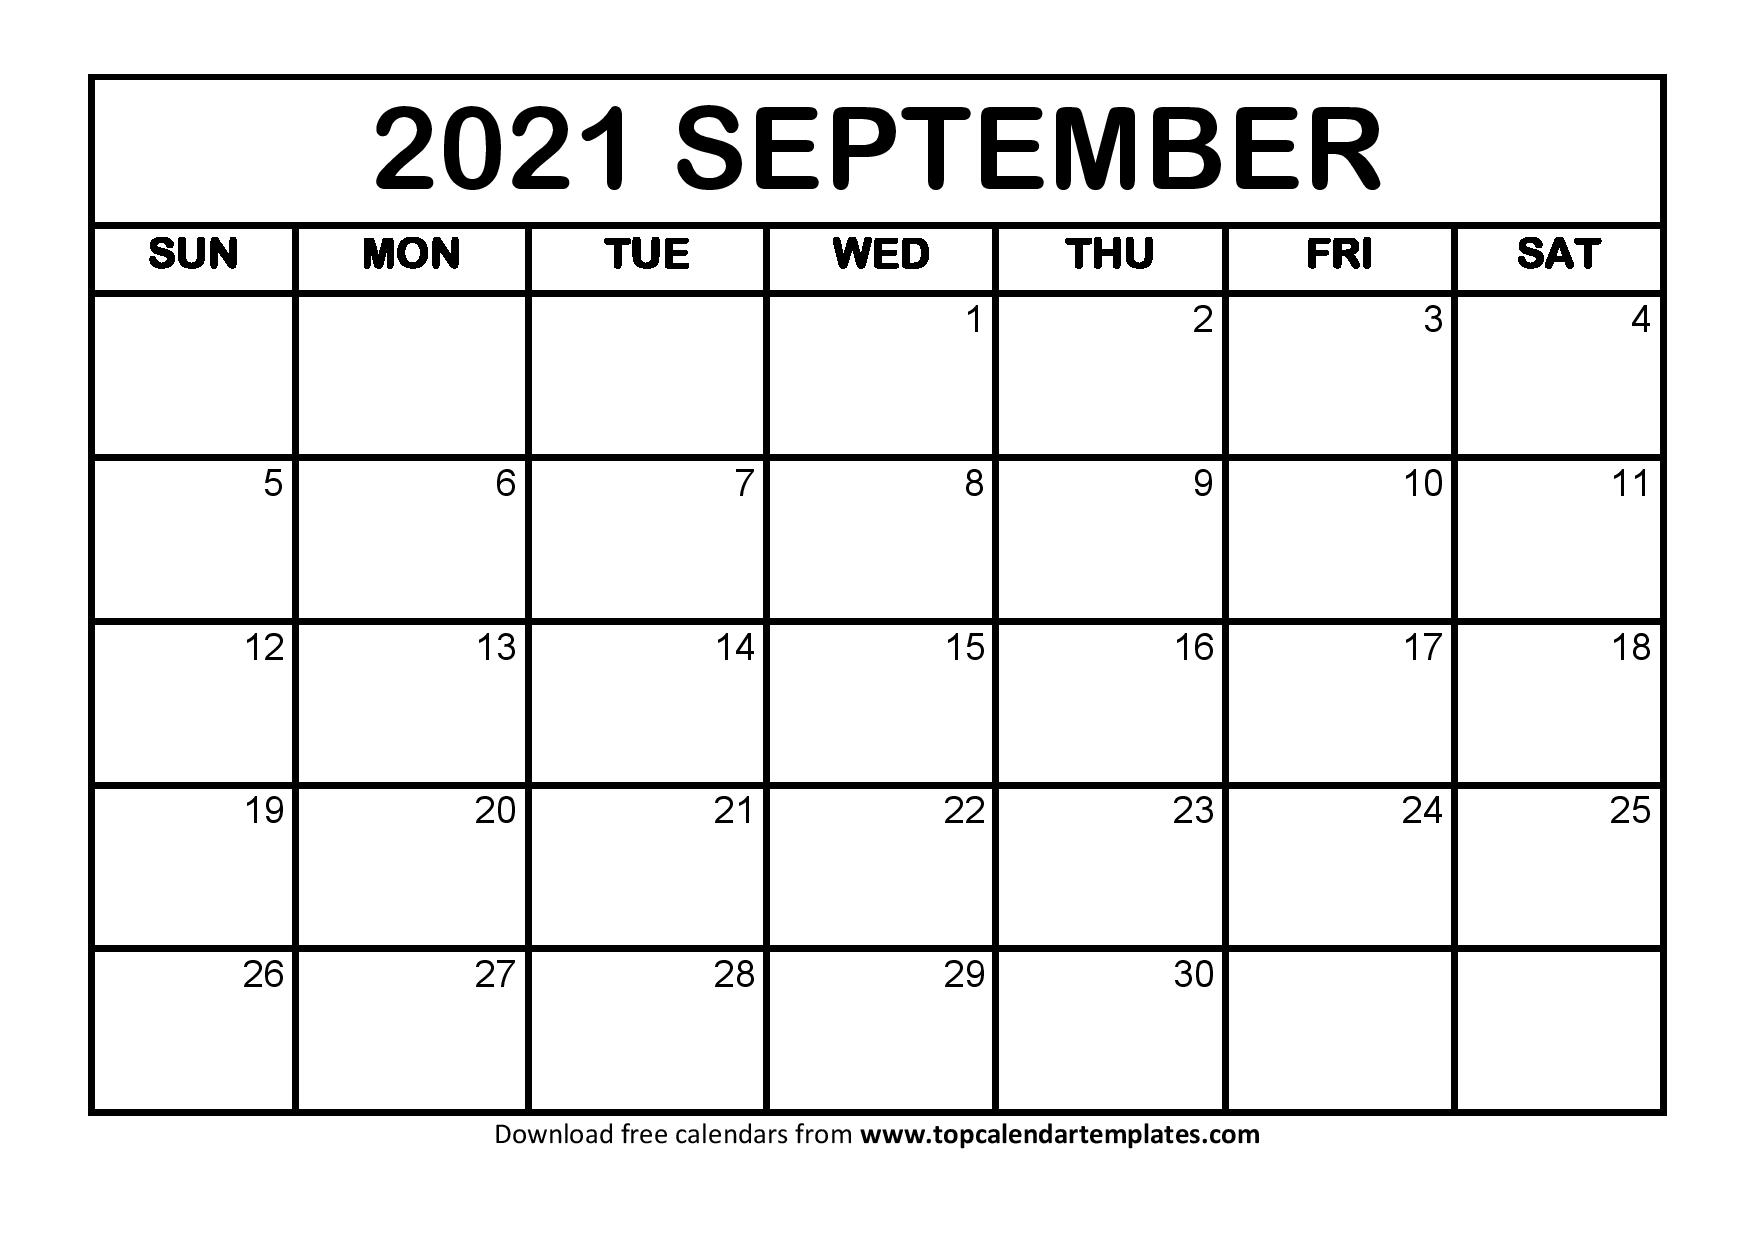 Printable Calendar September 2021 Free - September 2021